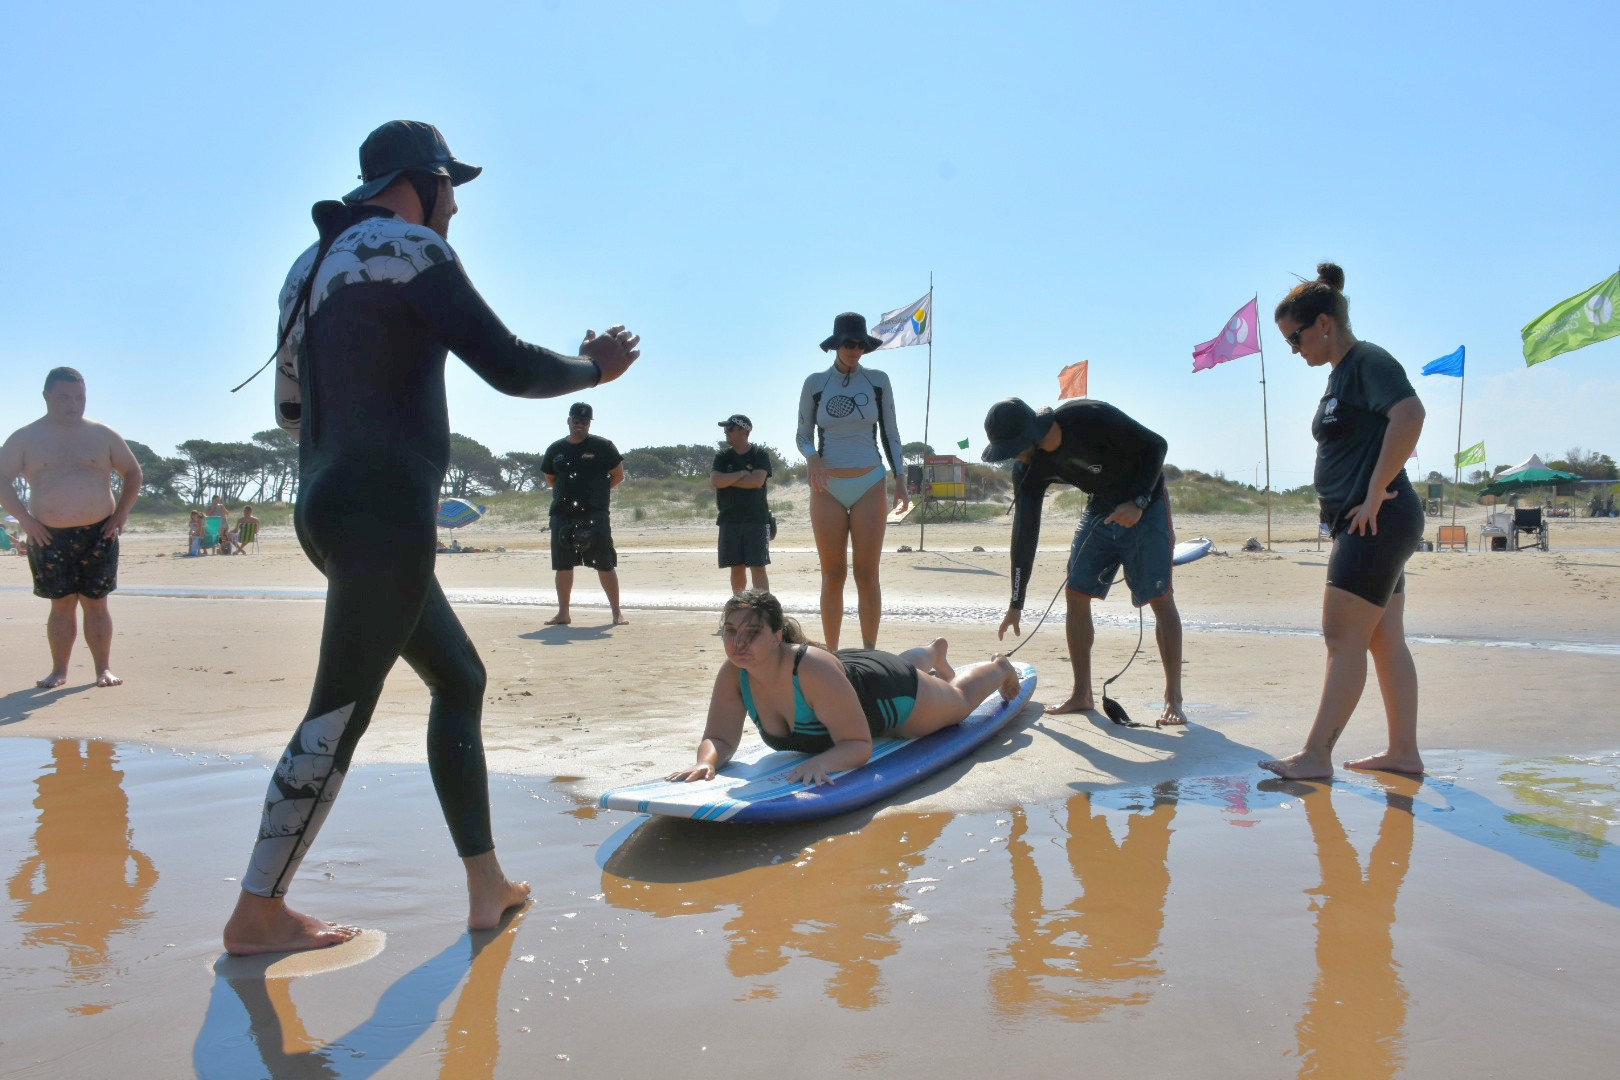 Participante de Surfing canario Mar al Alcance en maniobras previas al ingreso al agua